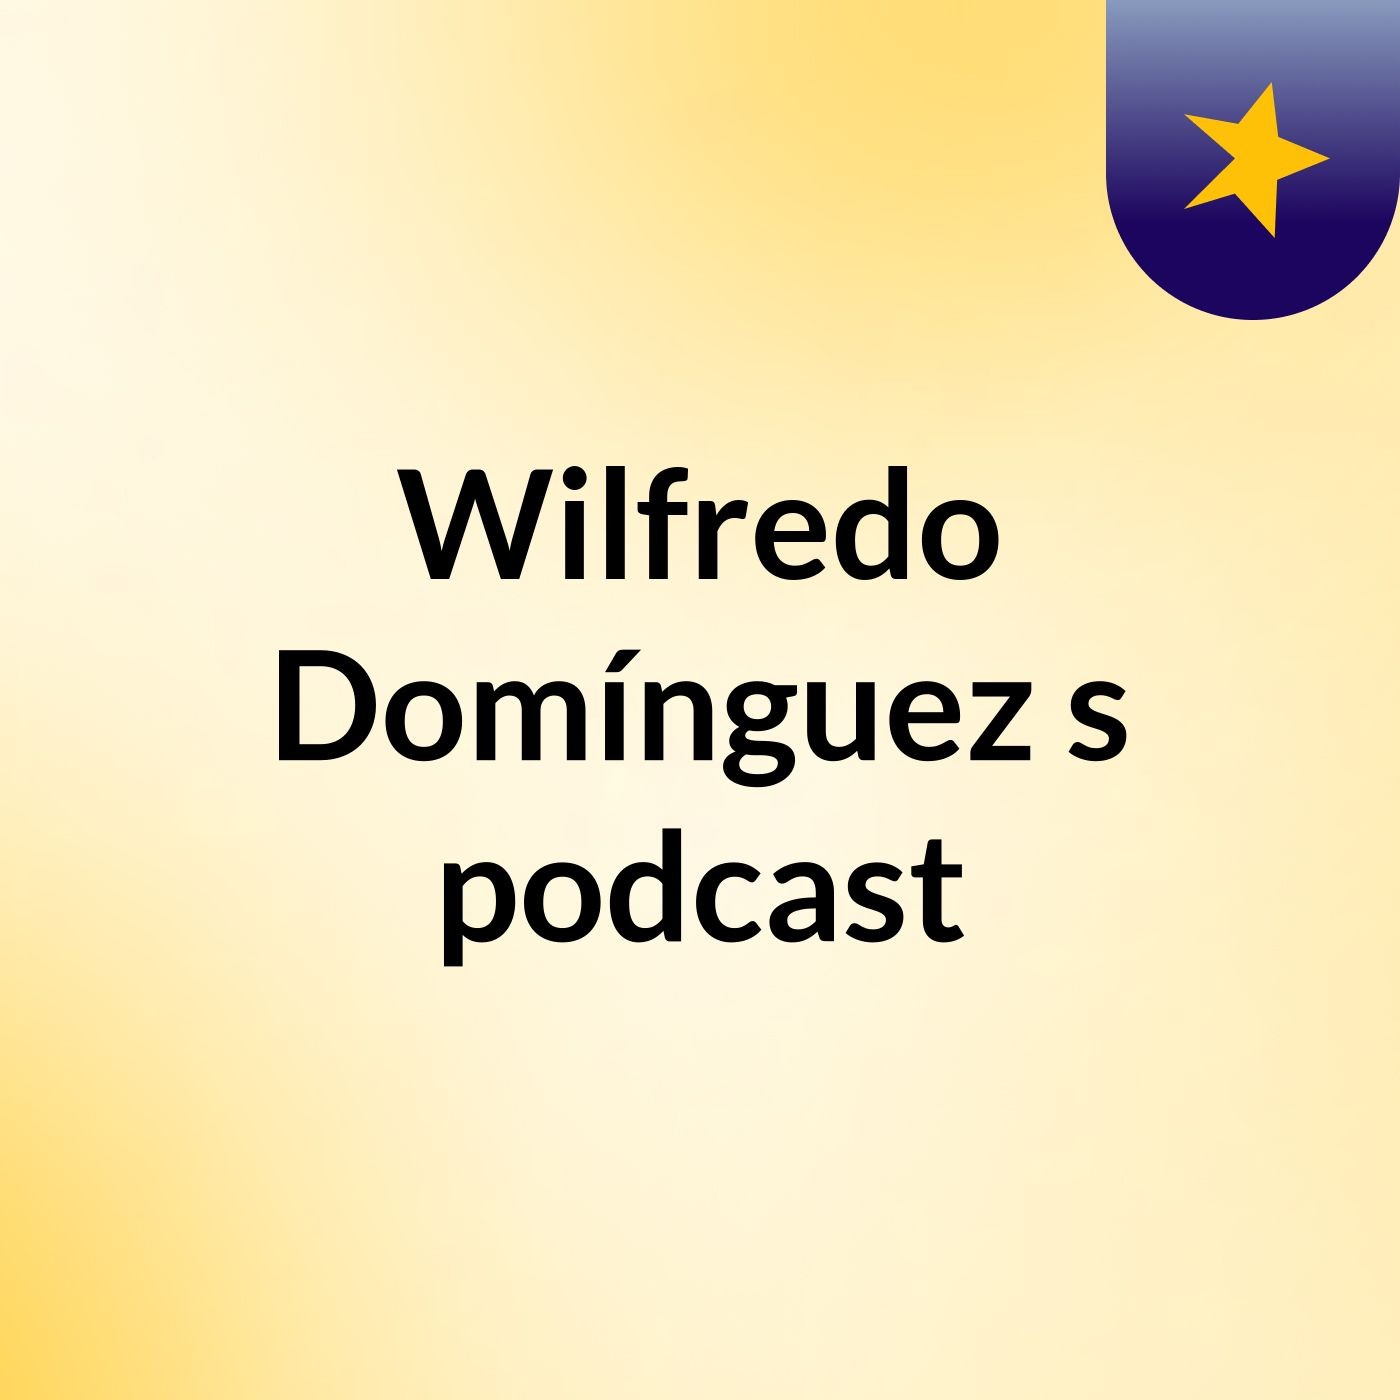 Wilfredo Domínguez's podcast